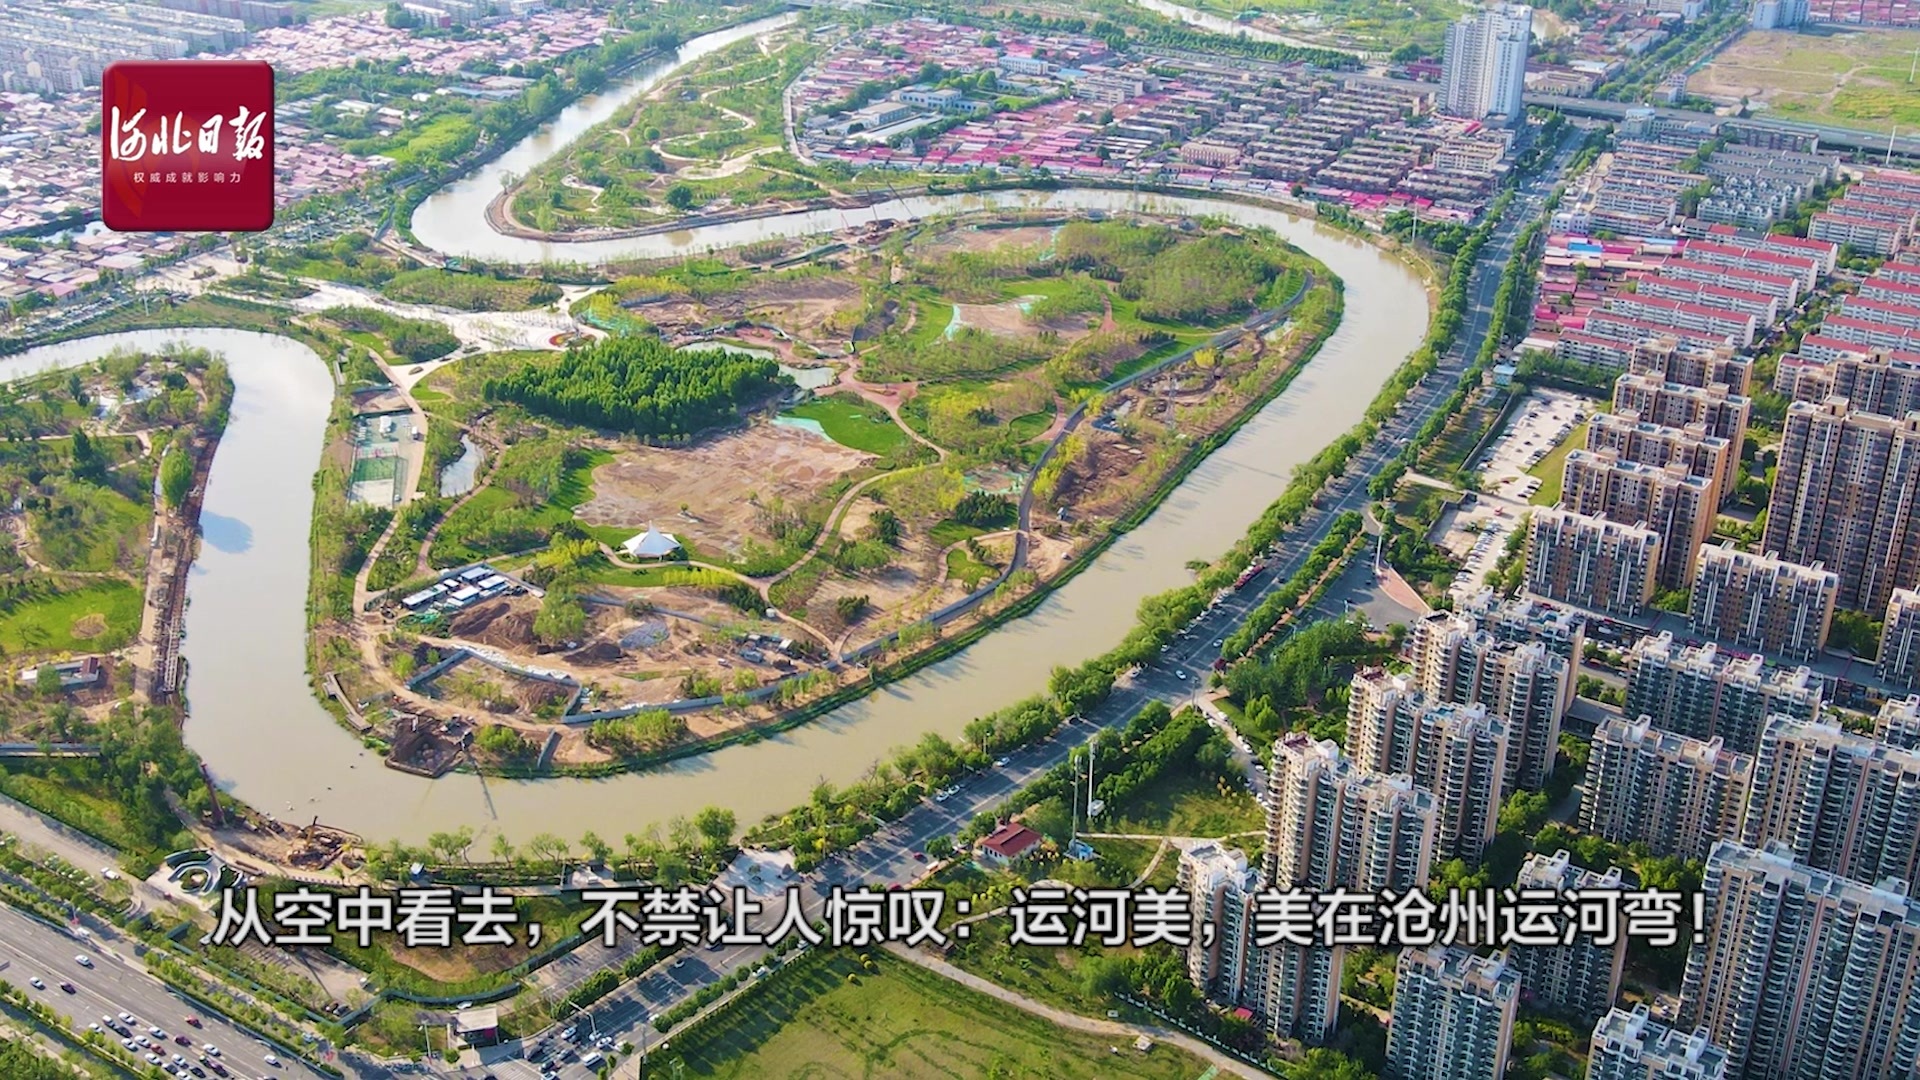 线上看展 | 走读运河文化系列之一 运河“龙头”——京津冀的千年文脉_通州